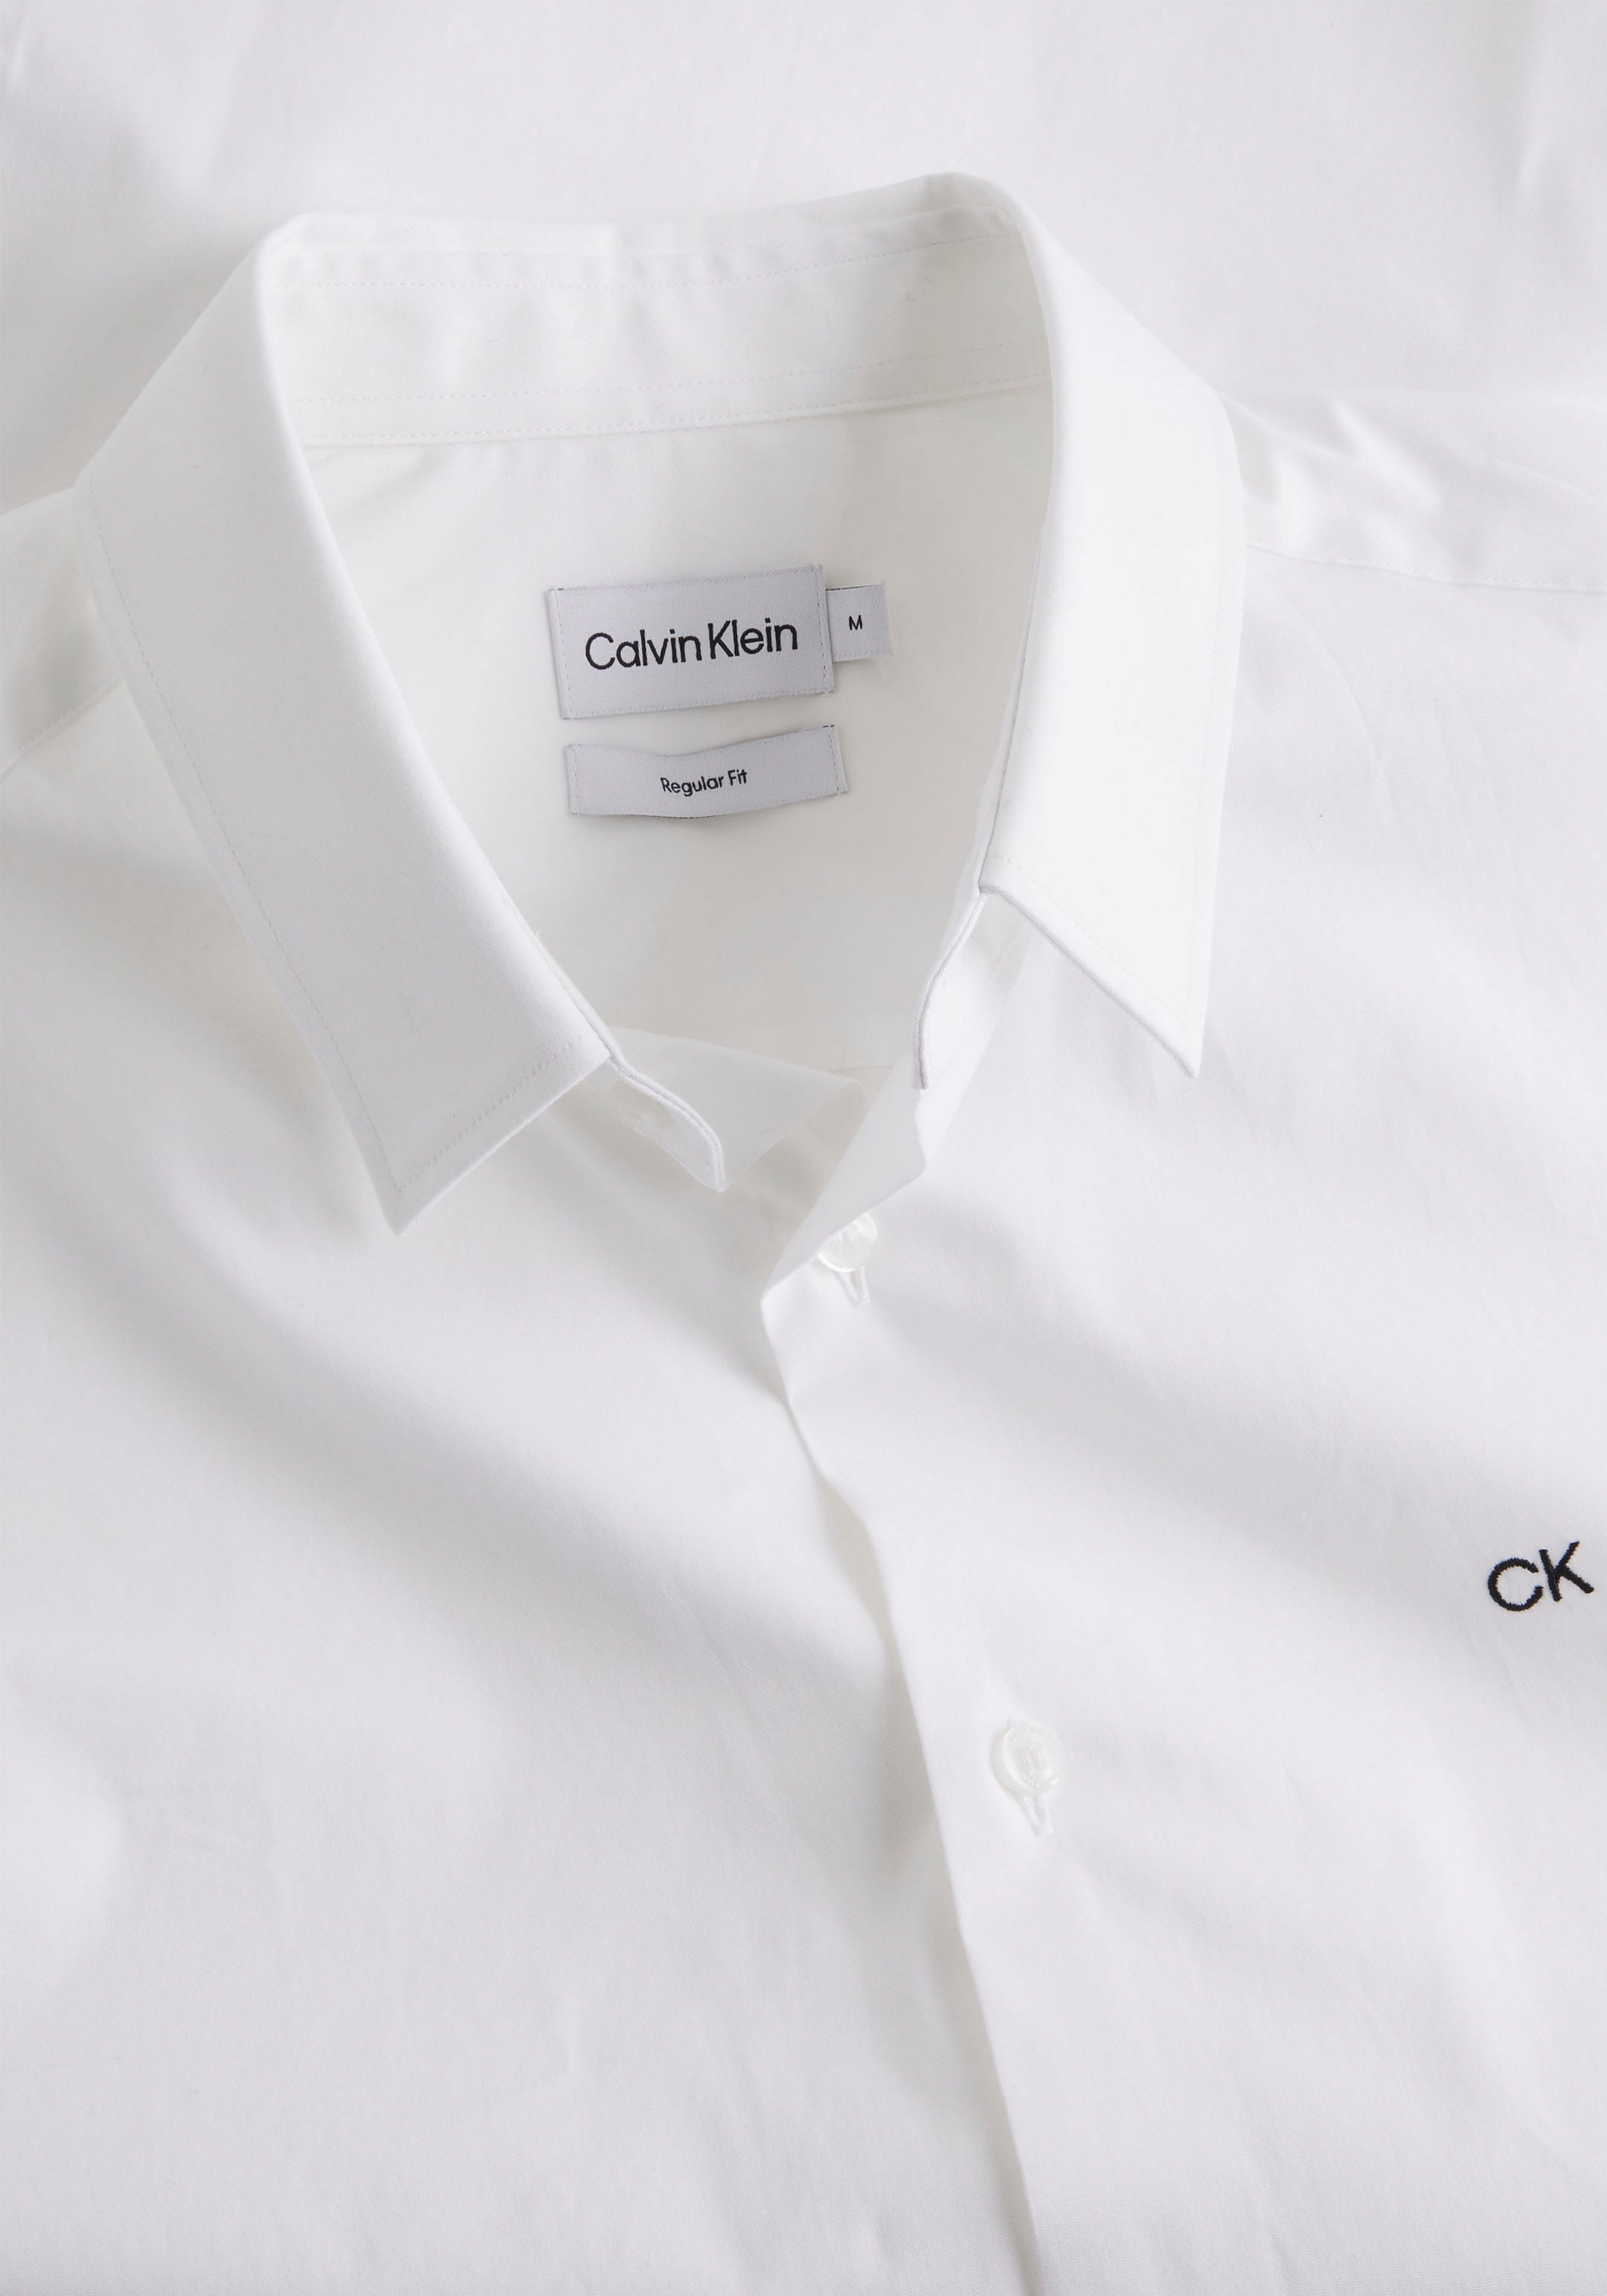 Kurzarmhemd, auf Klein Calvin der OTTO Logo Klein bei Brust Calvin mit